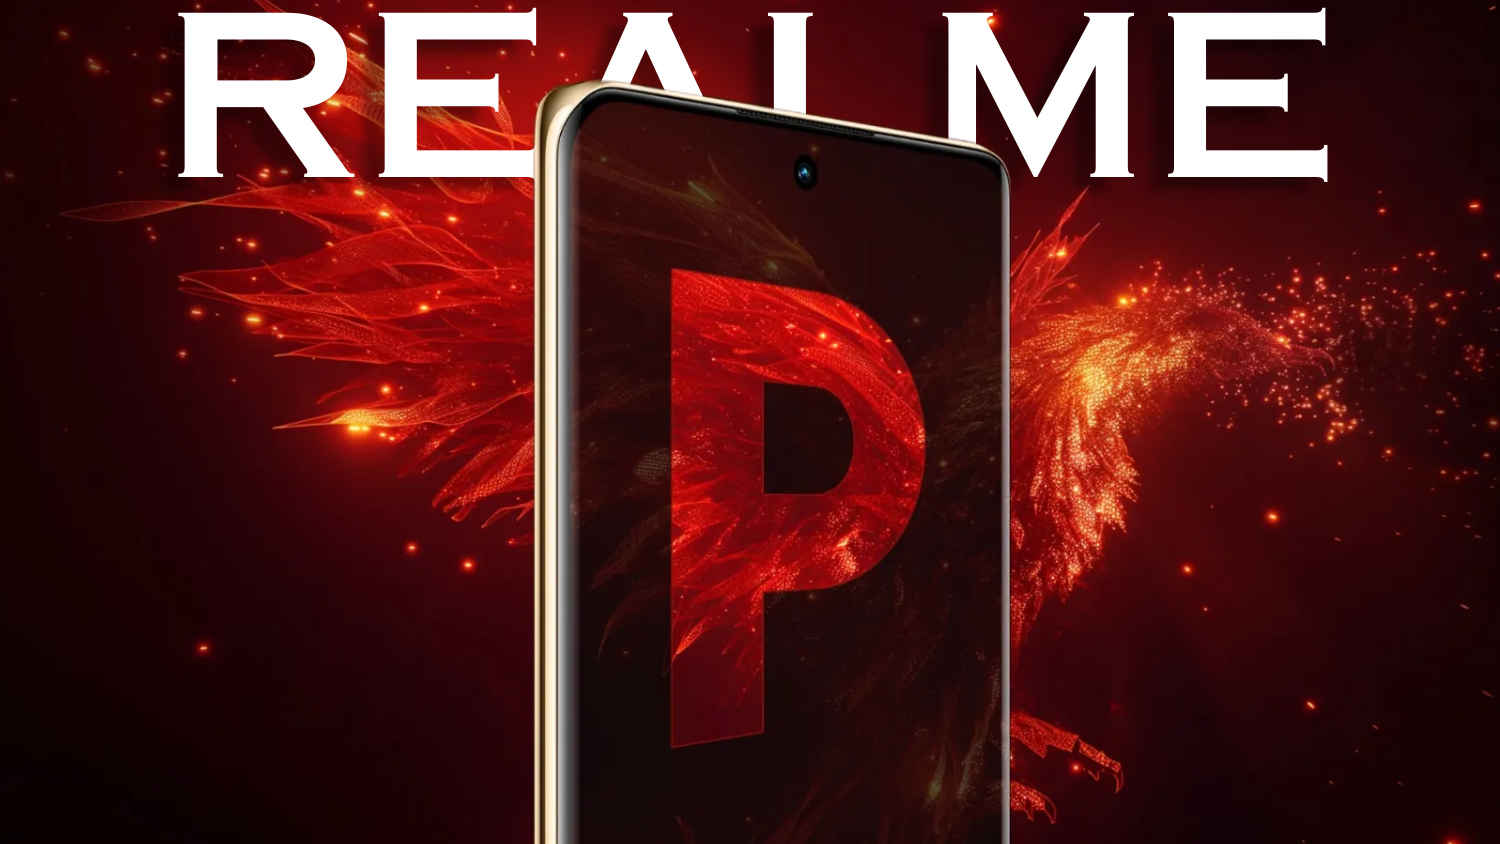 Affordable! नवीनतम Realme P1 सिरीजची भारतीय लाँच डेट Confirm! किंमत असेल 15000 रुपयांपेक्षा कमी। Tech News 